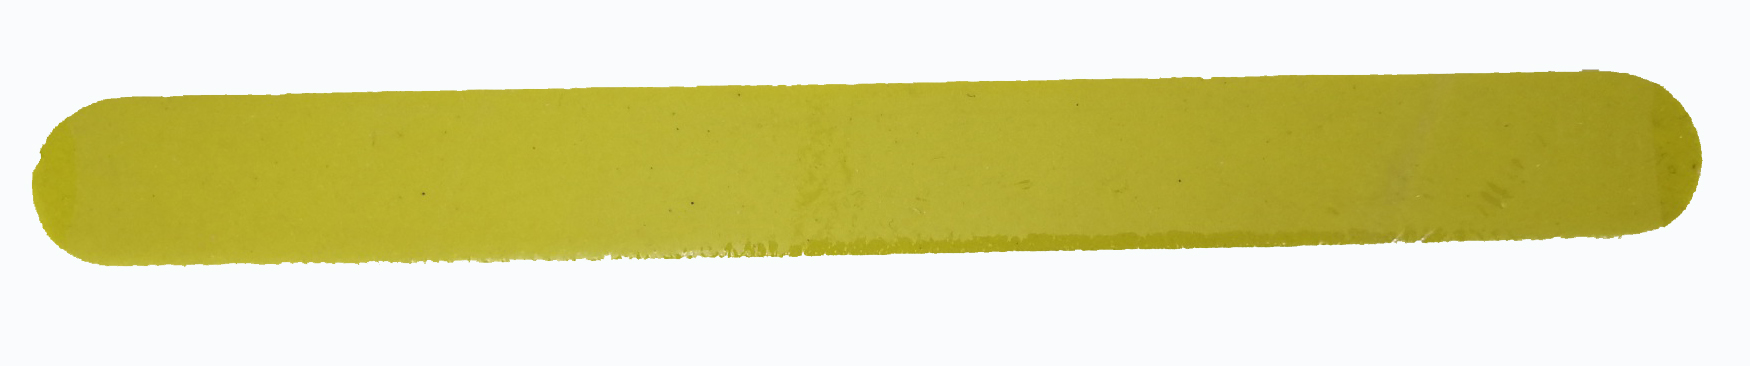 Λίμα 7'' Yellow Mylar Nail File FL3-07B GRIT-120/180 999117a-0